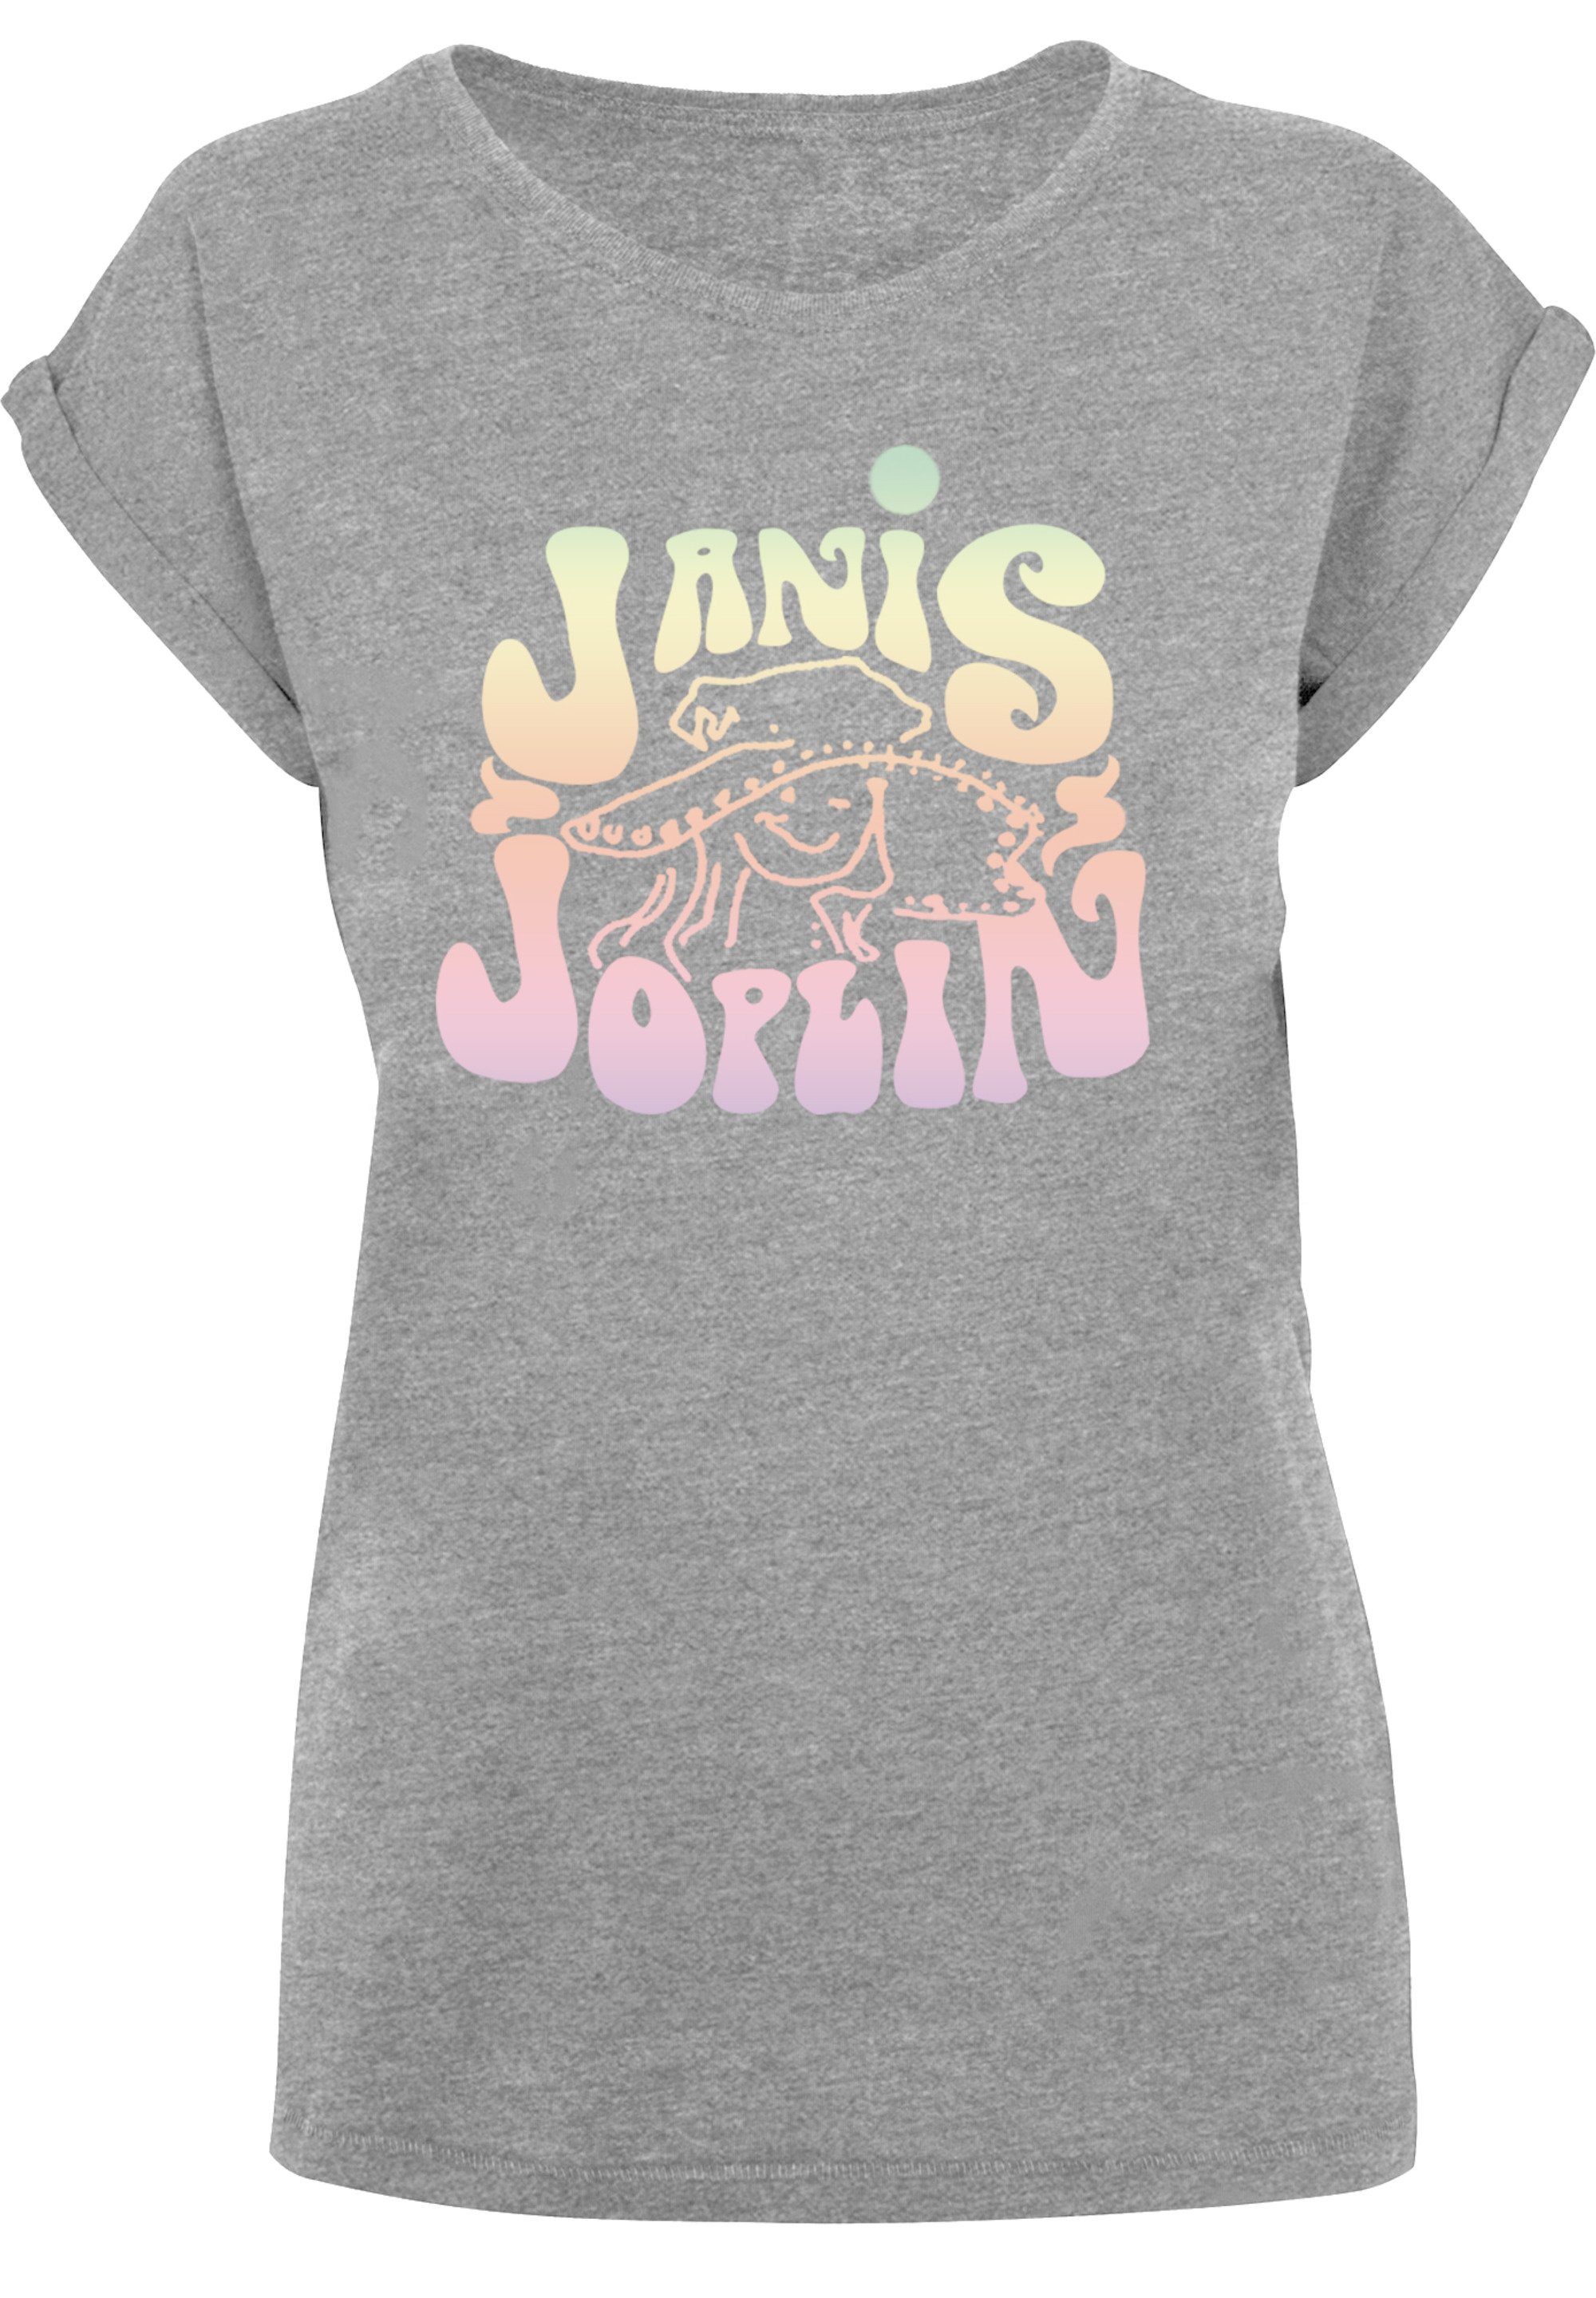 F4NT4STIC T-Shirt Janis Joplin Pastel Logo Print